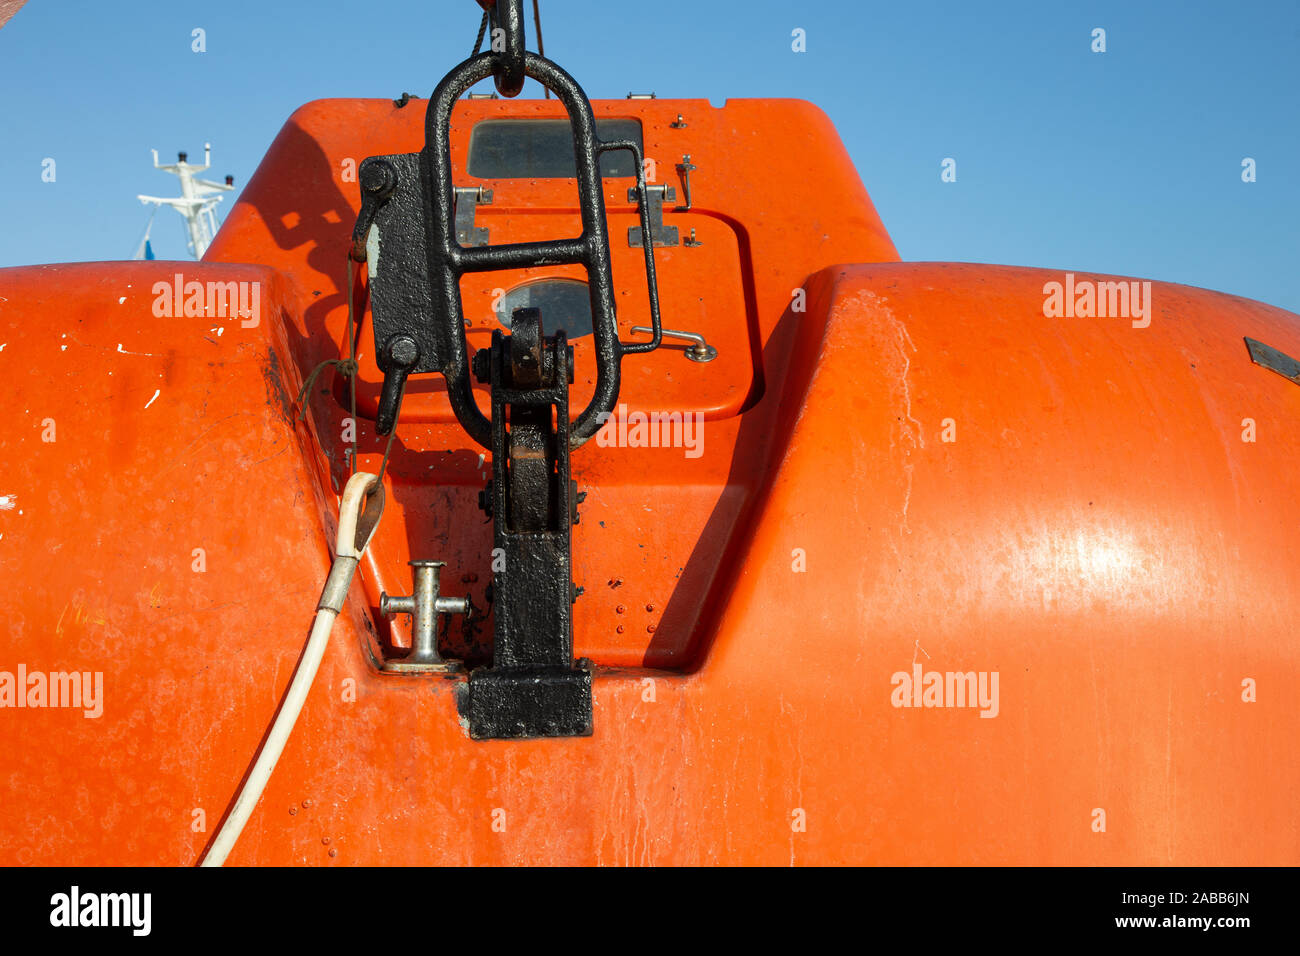 Punti metallici di fissaggio vita arancione battello di salvataggio barca arancione per le situazioni di emergenza in mare, trasporto marittimo del tema. Close up. Foto Stock